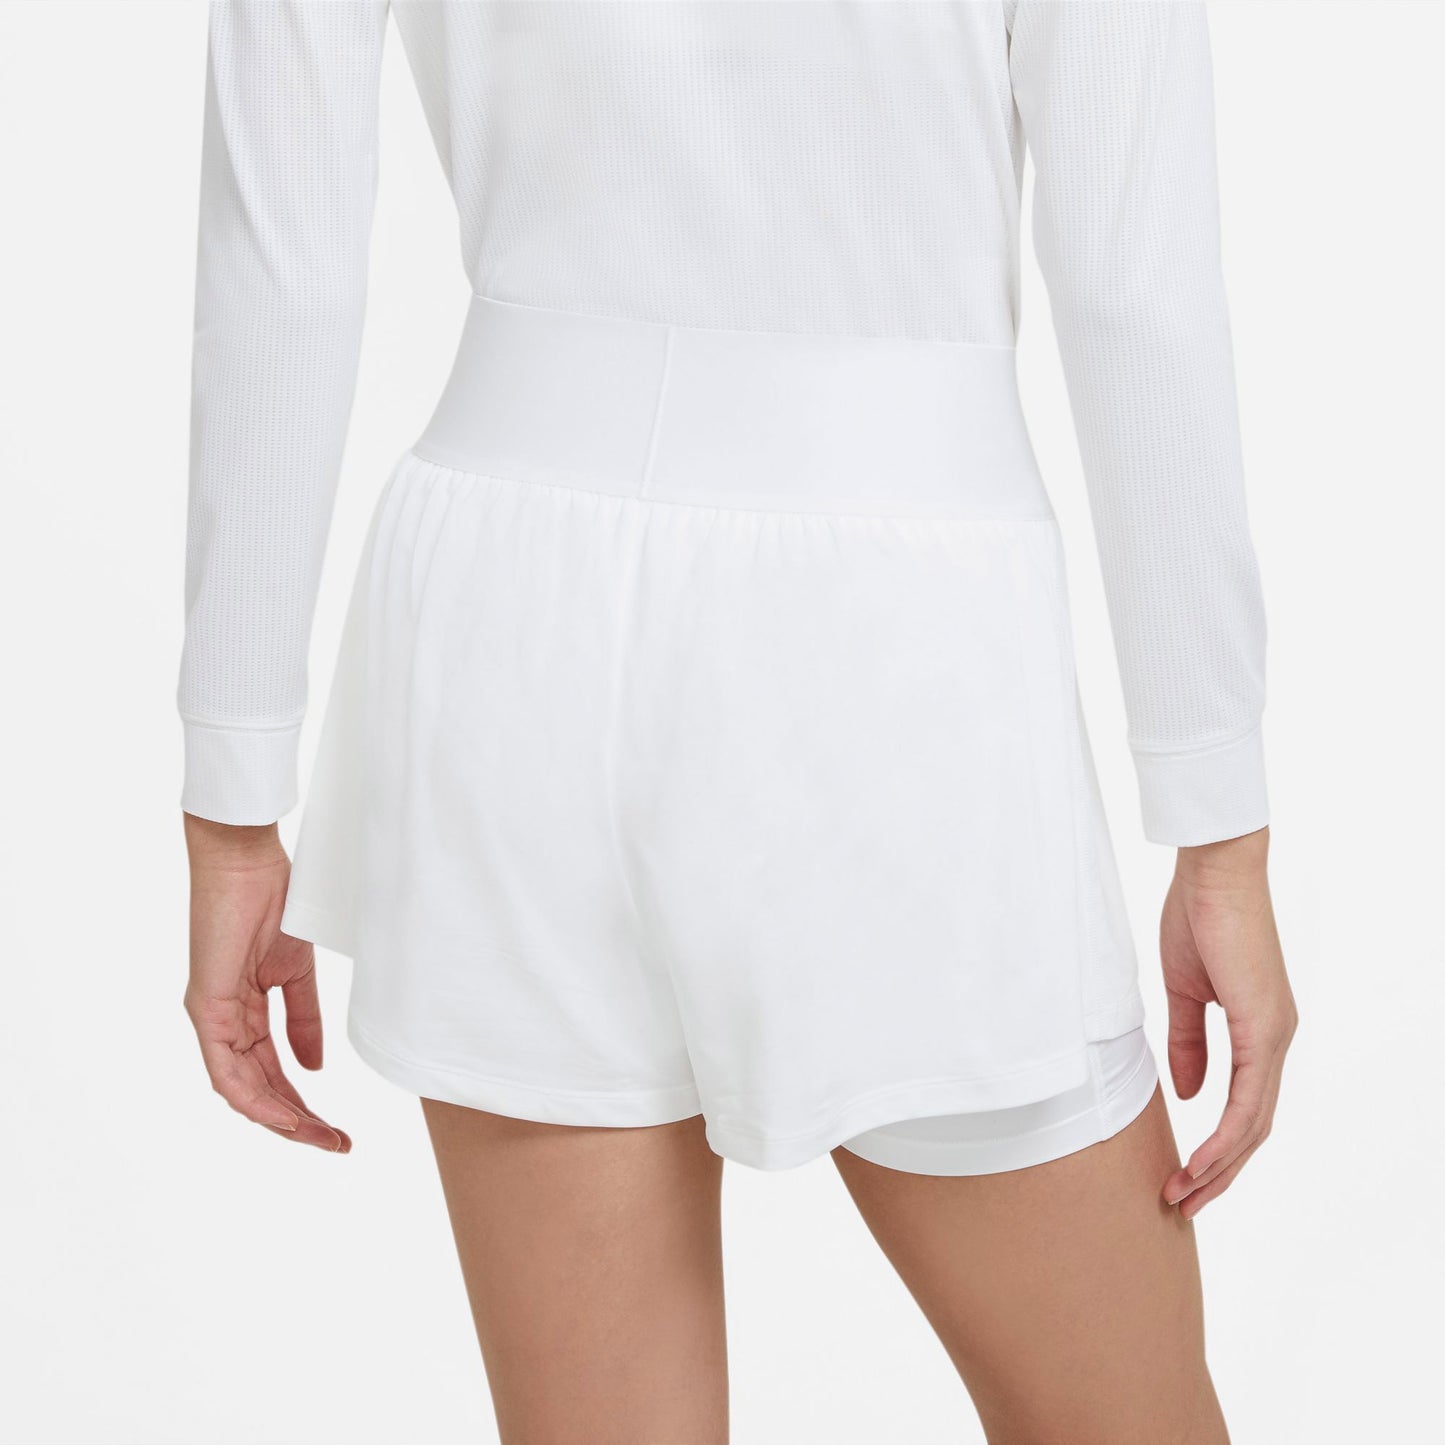 Nike Dri-FIT Advantage Women's Tennis Shorts White (2)